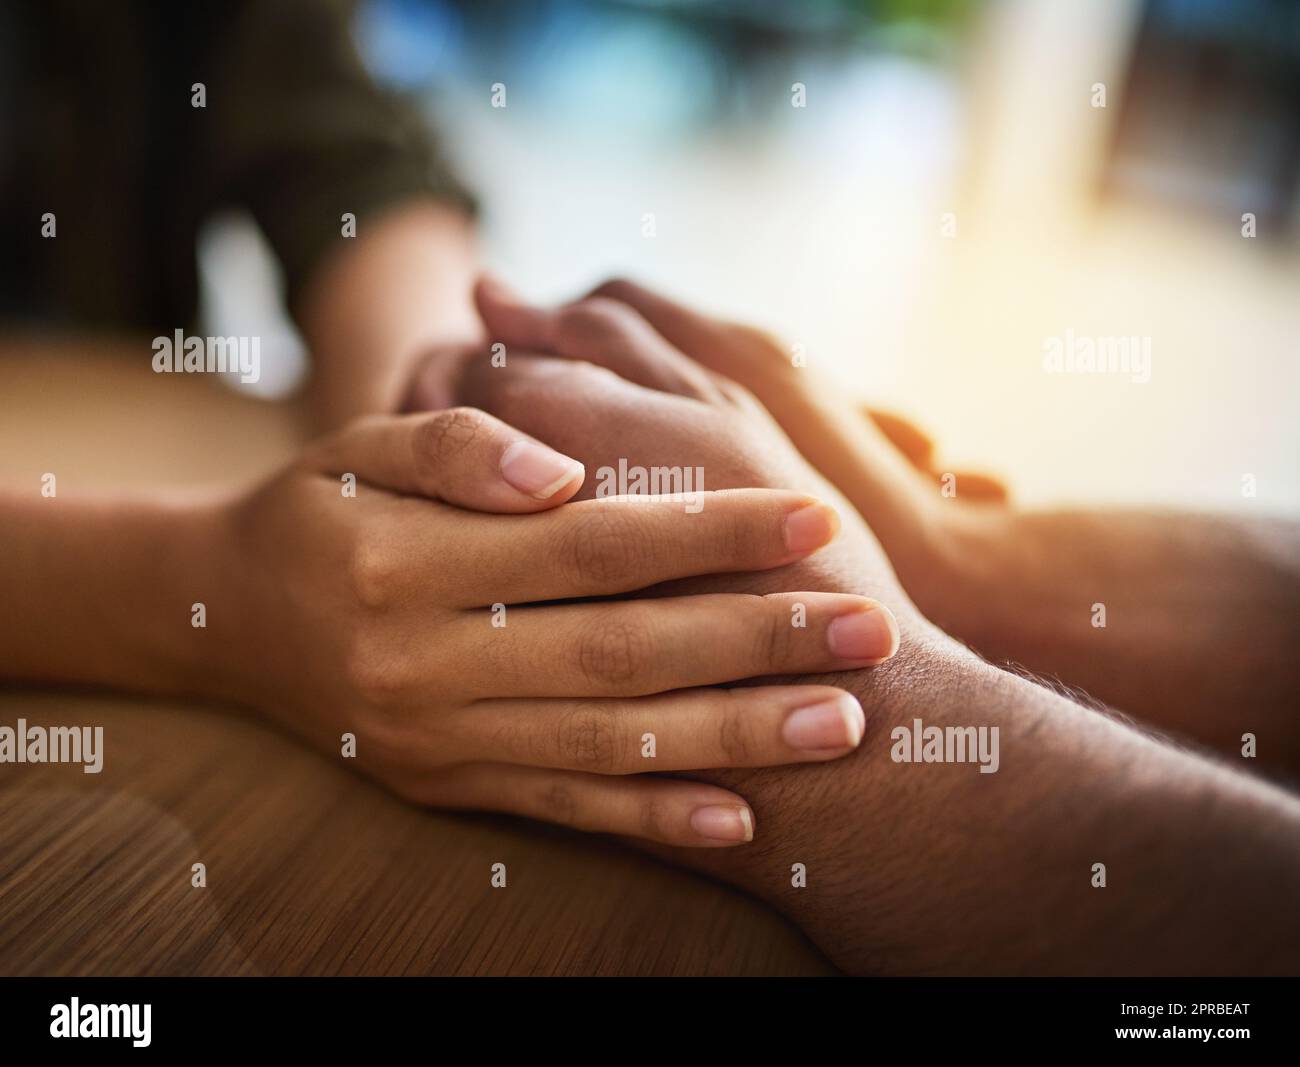 Händchenhalten zeigt Fürsorge, Liebe und Unterstützung zwischen Freunden, Paar oder Familie. Menschen trösten, geben Zuneigung und trösten mit einer Handgeste und Berührung für Mitgefühl, Einfühlungsvermögen und Freundlichkeit Stockfoto